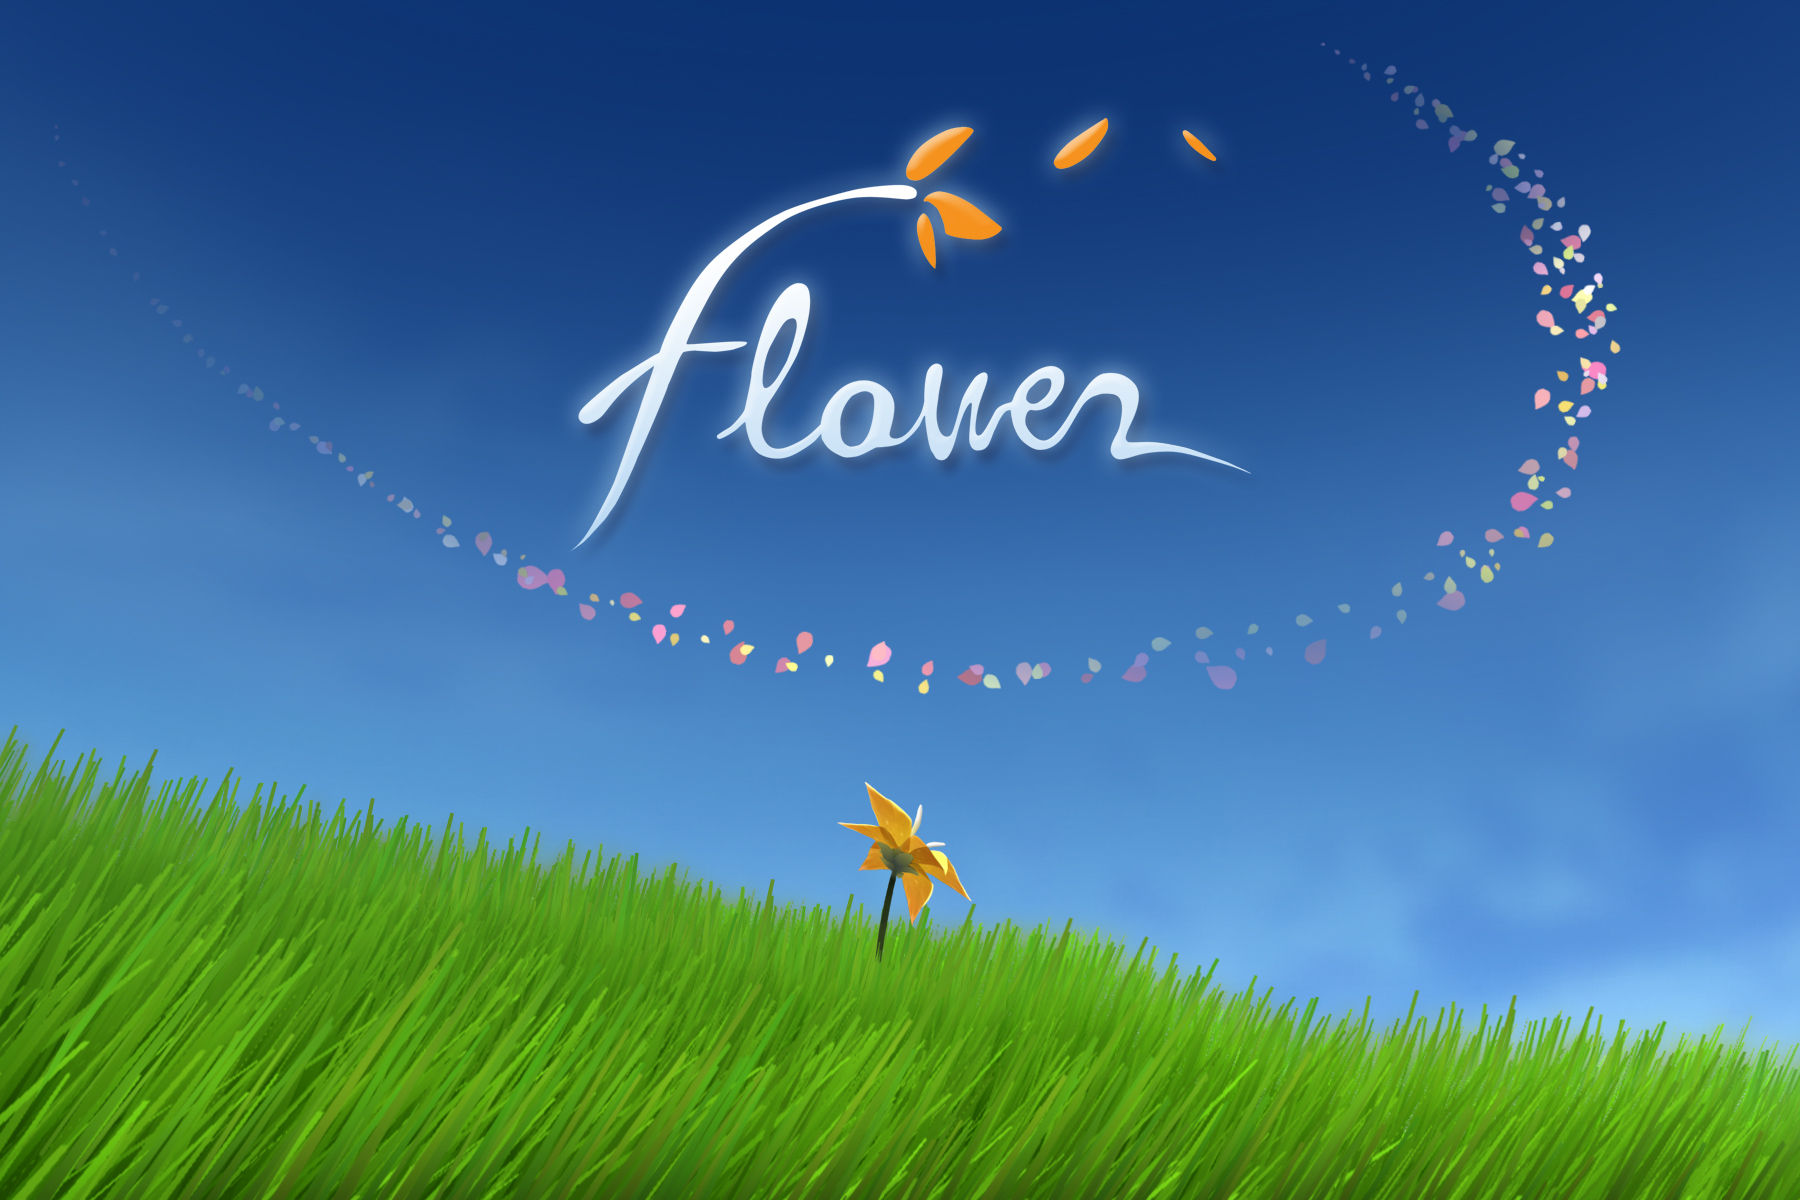 "Flower" Schriftzug mit einer auf der Wiese blühenden Blume